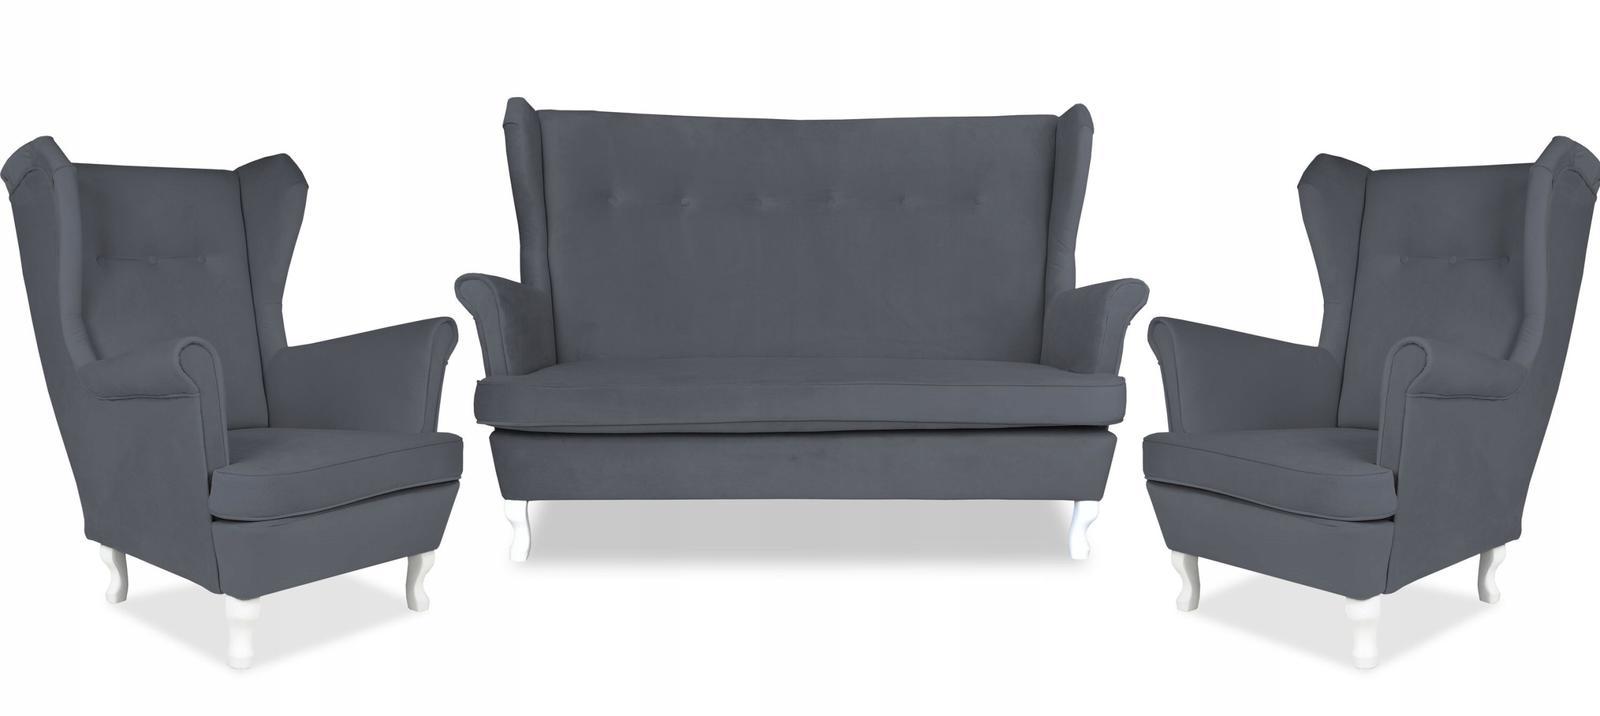 Zestaw wypoczynkowy sofa + 2 fotele Family Meble 0 Full Screen